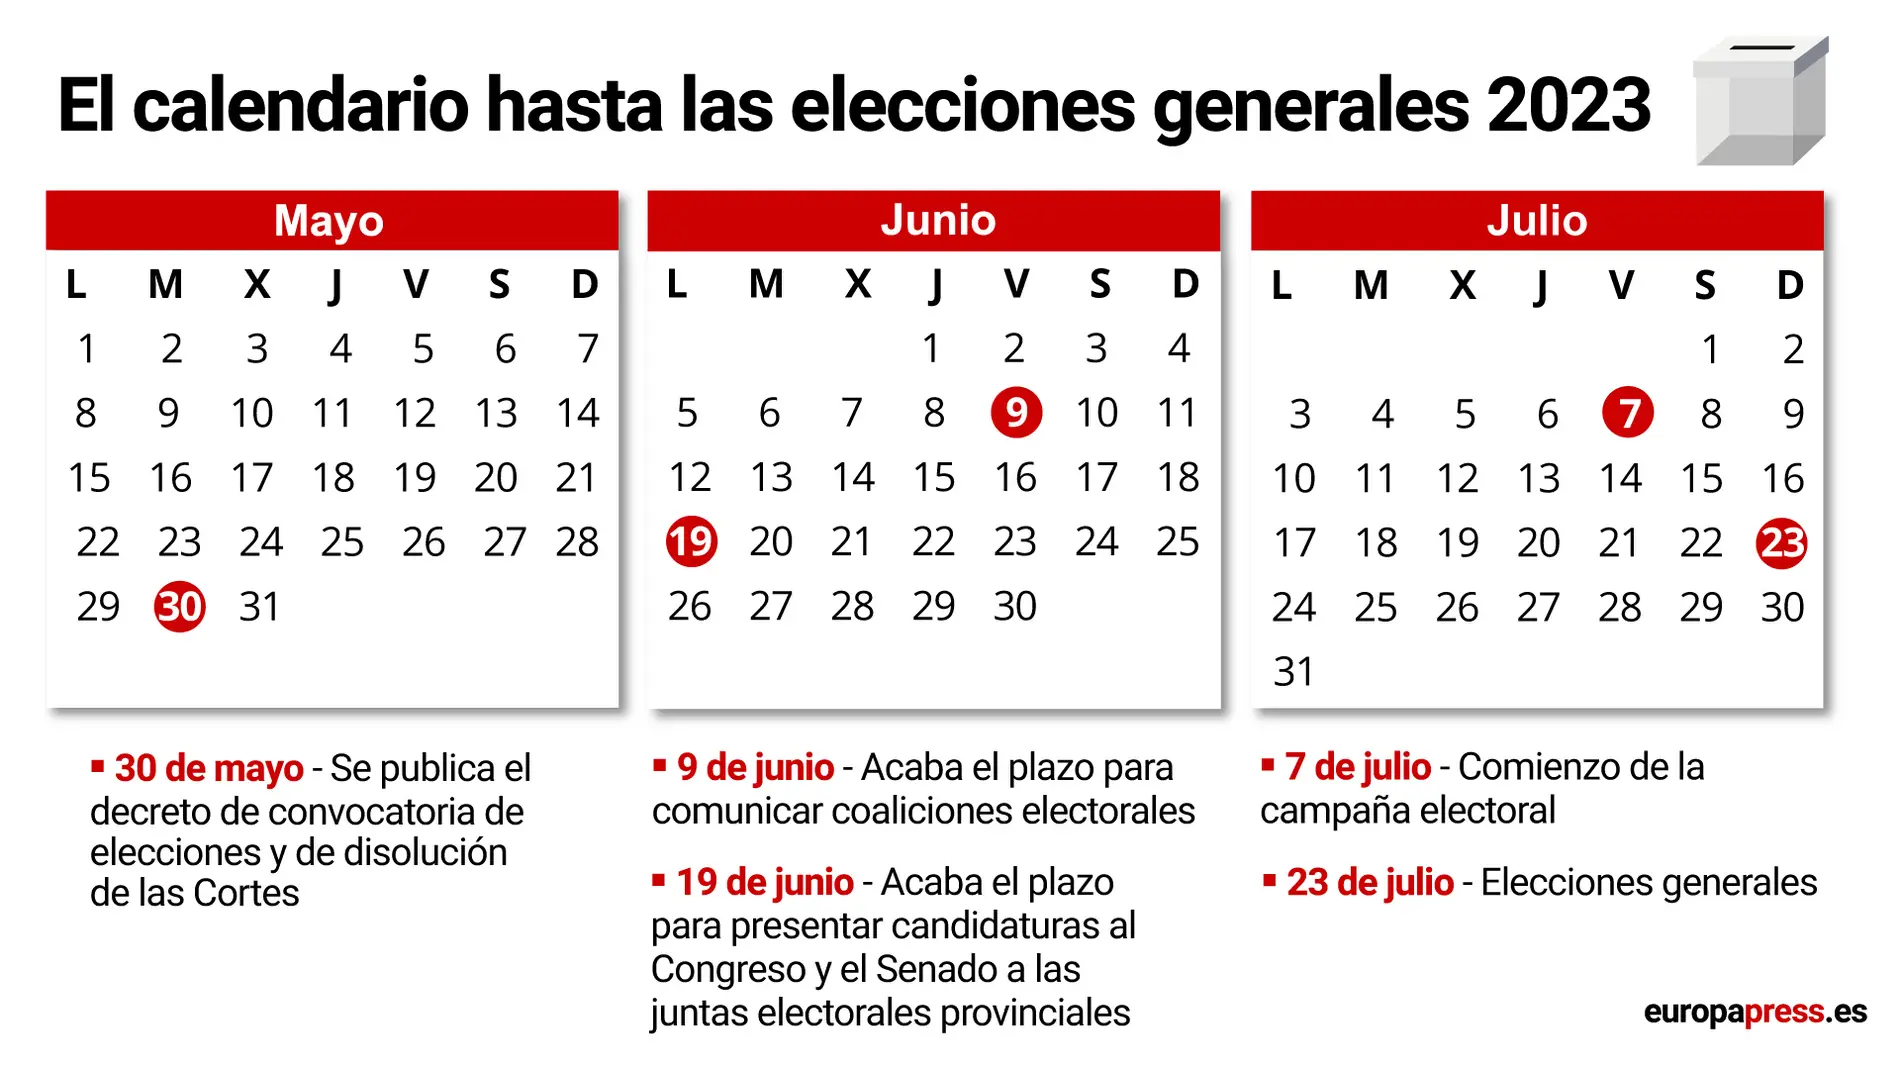 Calendario de las elecciones del 23 de julio